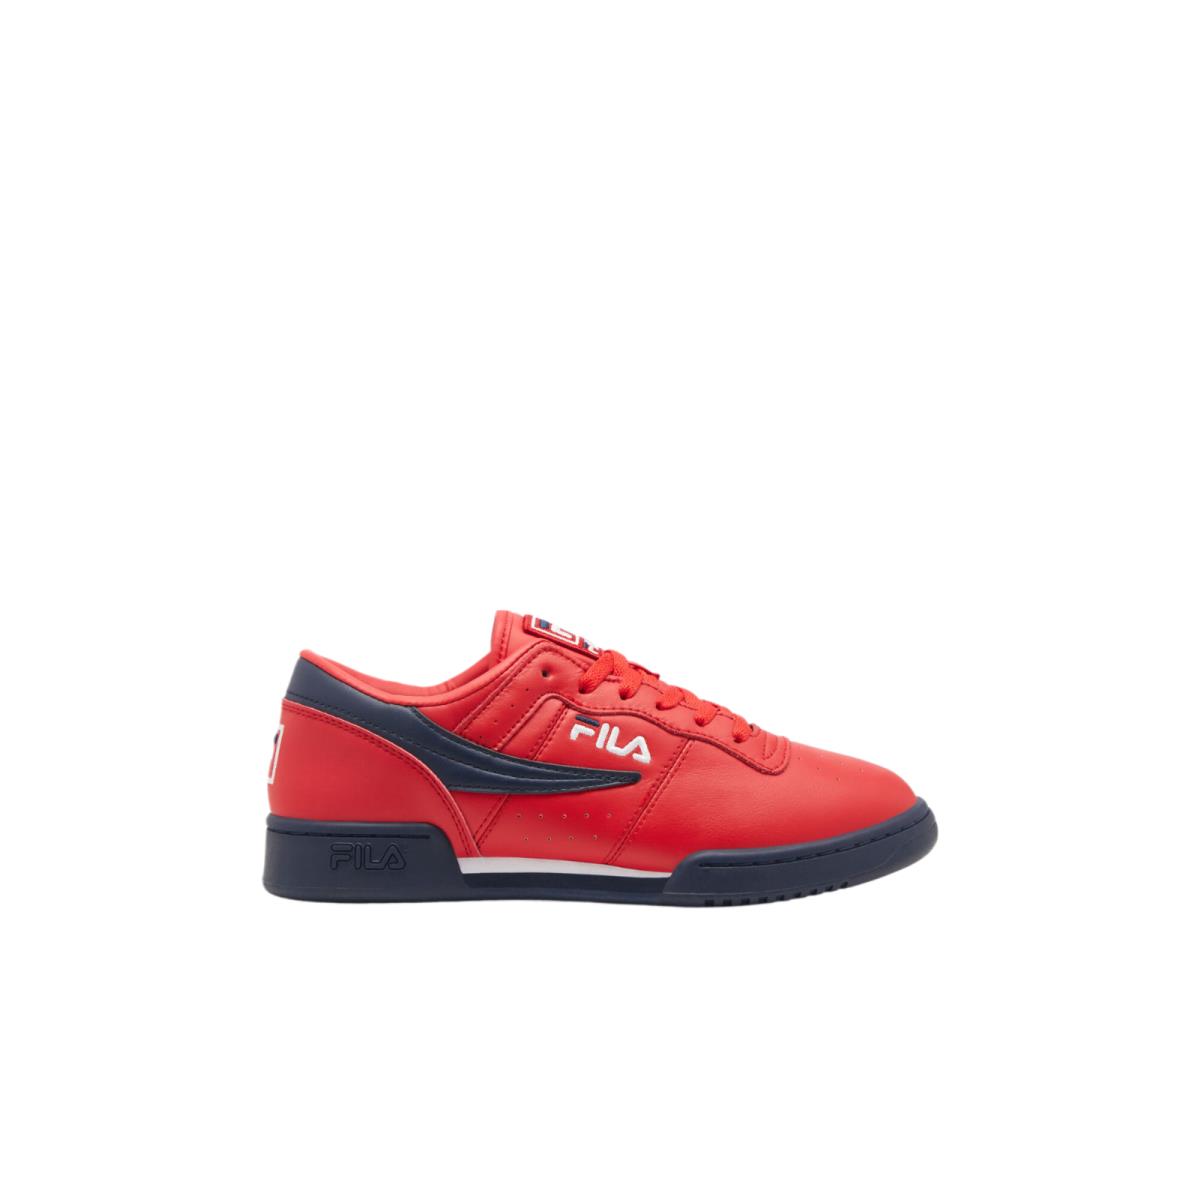 Fila Original Fitness Men Fitness Shoes Red / Navy / White 11F16LT-640